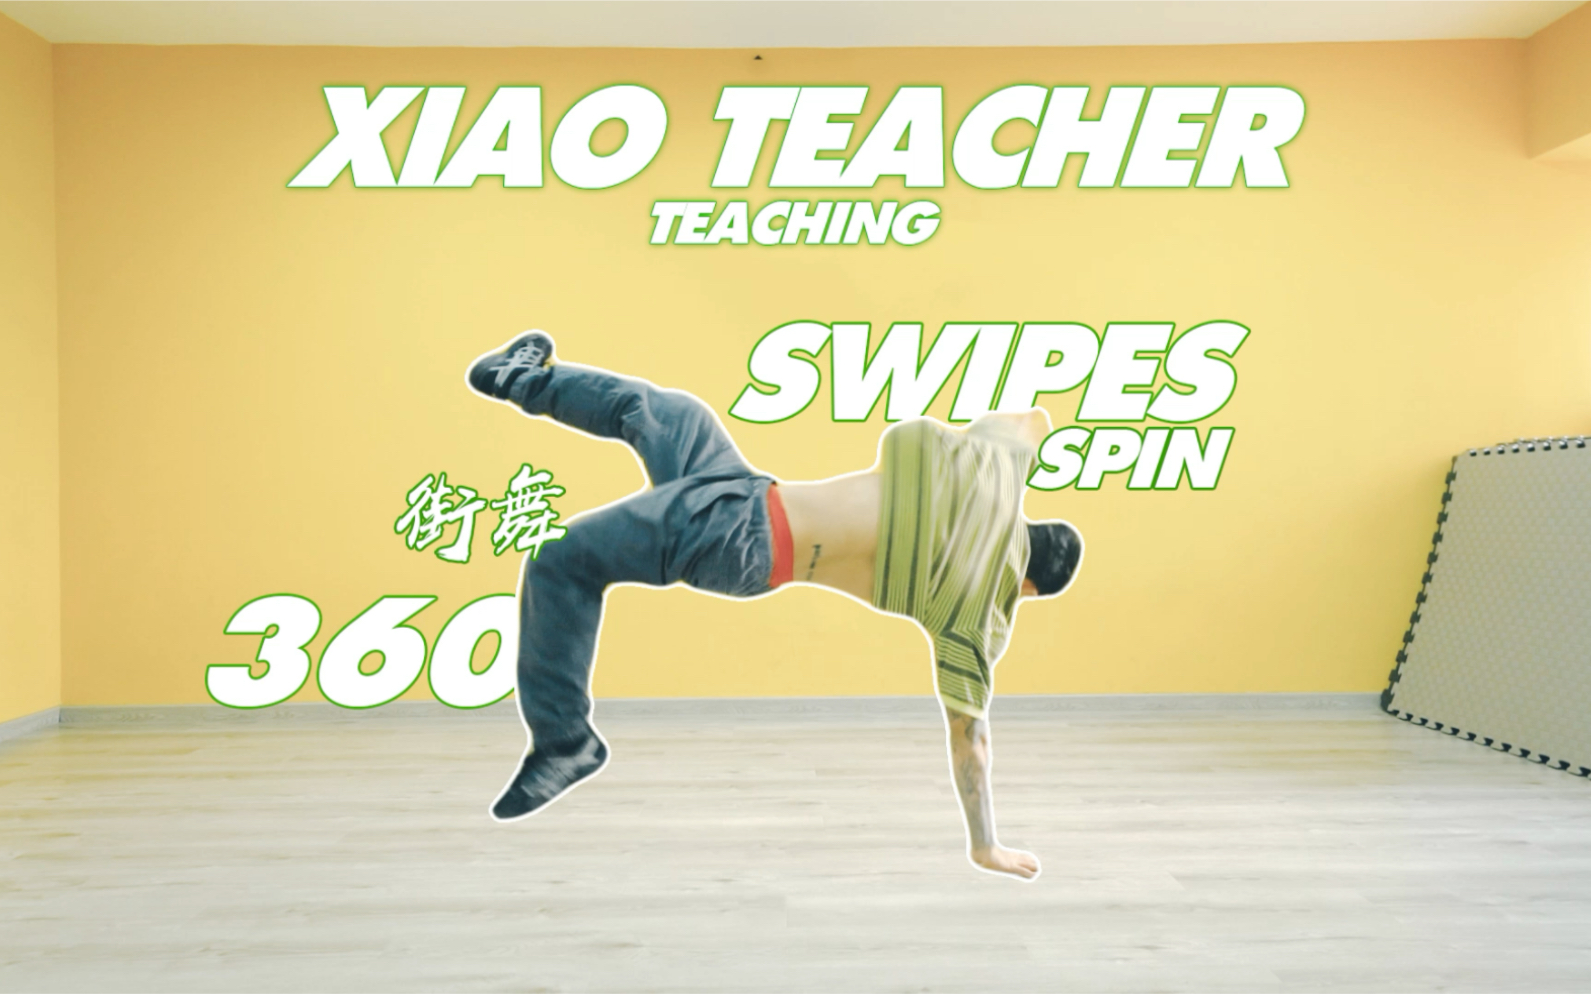 街舞360教学 swipes spin教学